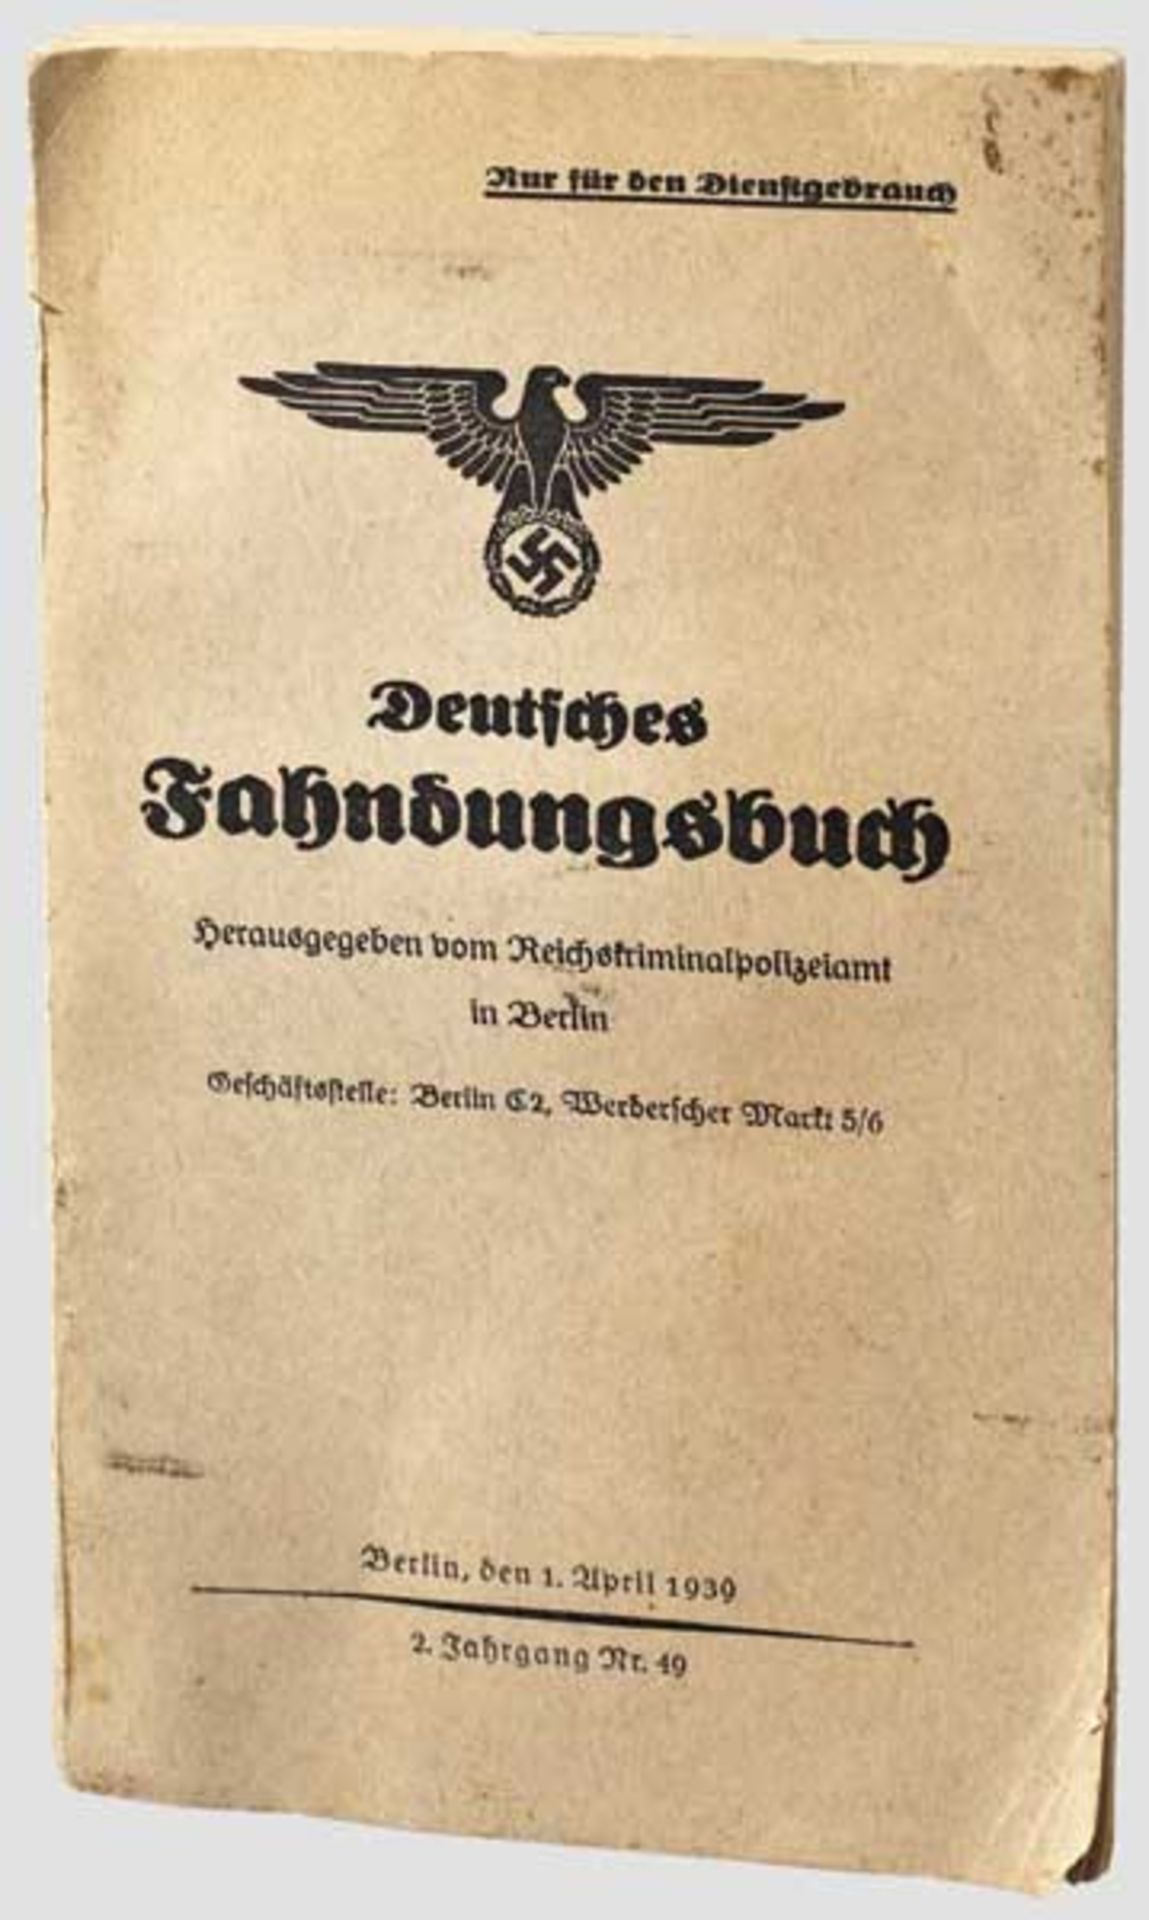 Deutsches Fahndungsbuch von 1939 Herausgeber Reichskriminalpolizeiamt, Berlin, den 1. April 1939.